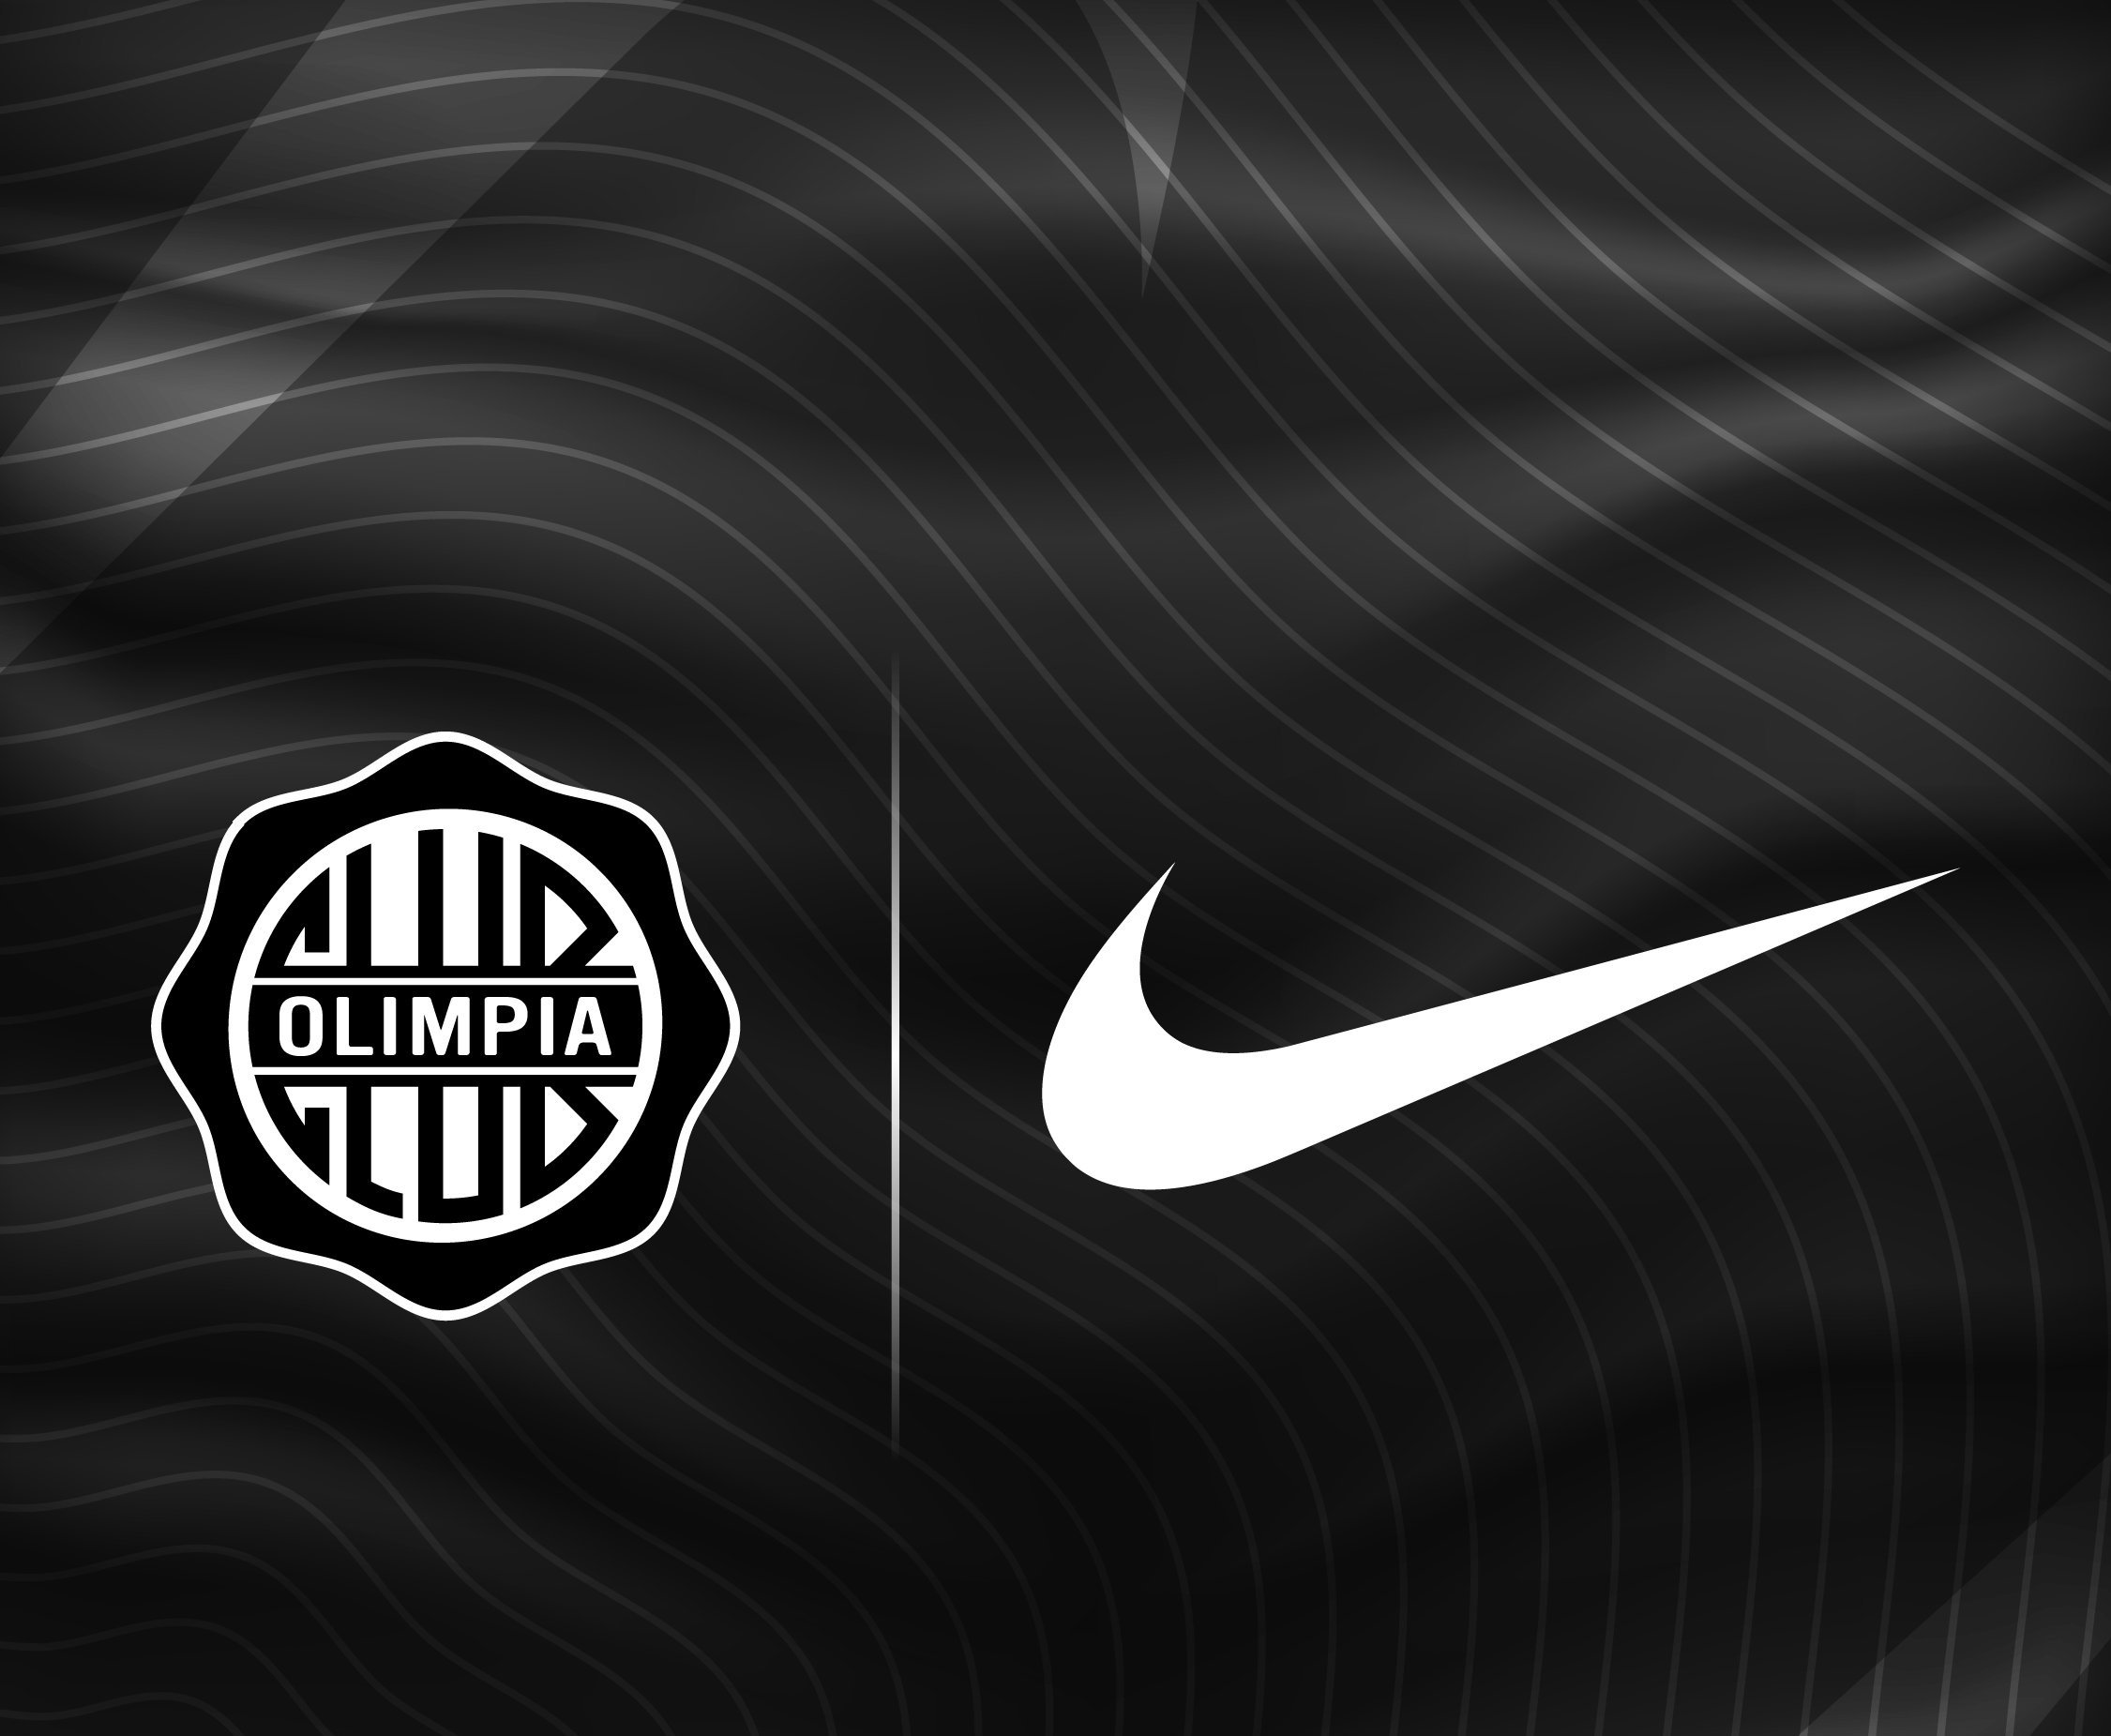 Bruno Pont on Twitter: "Atención: #Olimpia hace oficial el anuncio de renovación con la marca Nike hasta el 2026. #730AM #CardinalDeportivo https://t.co/bKVa5rSRlr" /